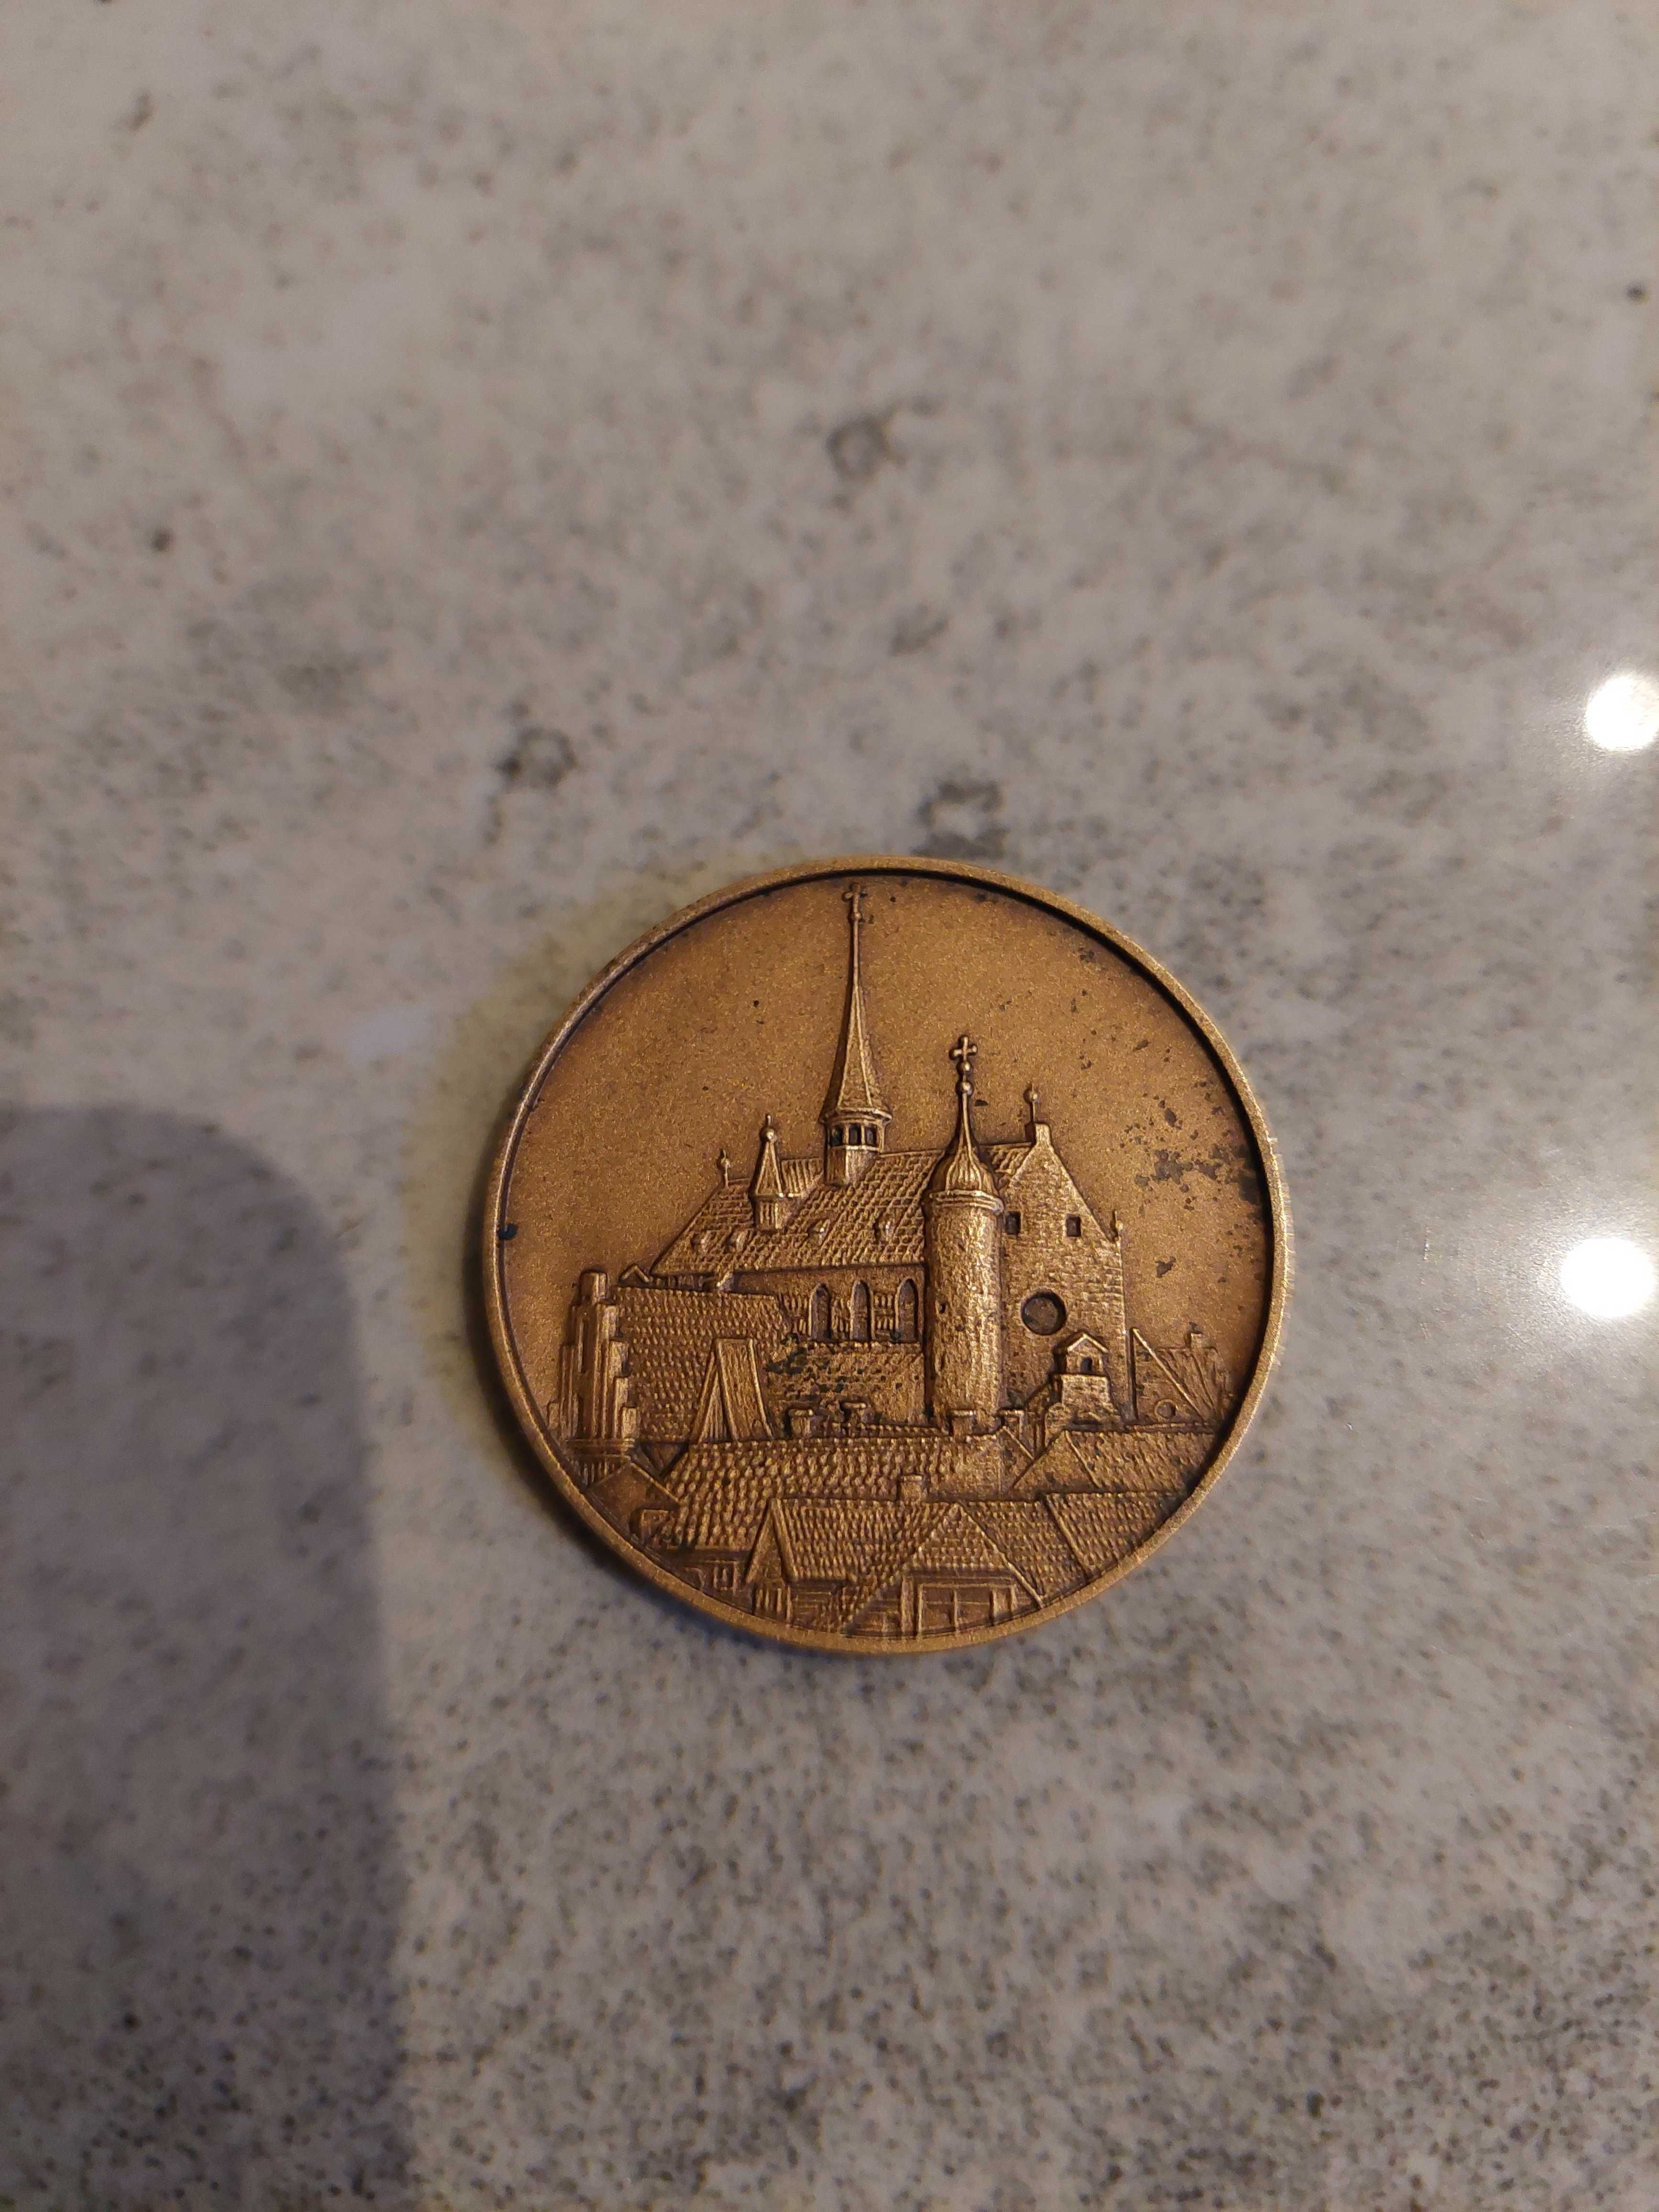 moneta z brązu, stara moneta, kolekcjonerski przedmiot